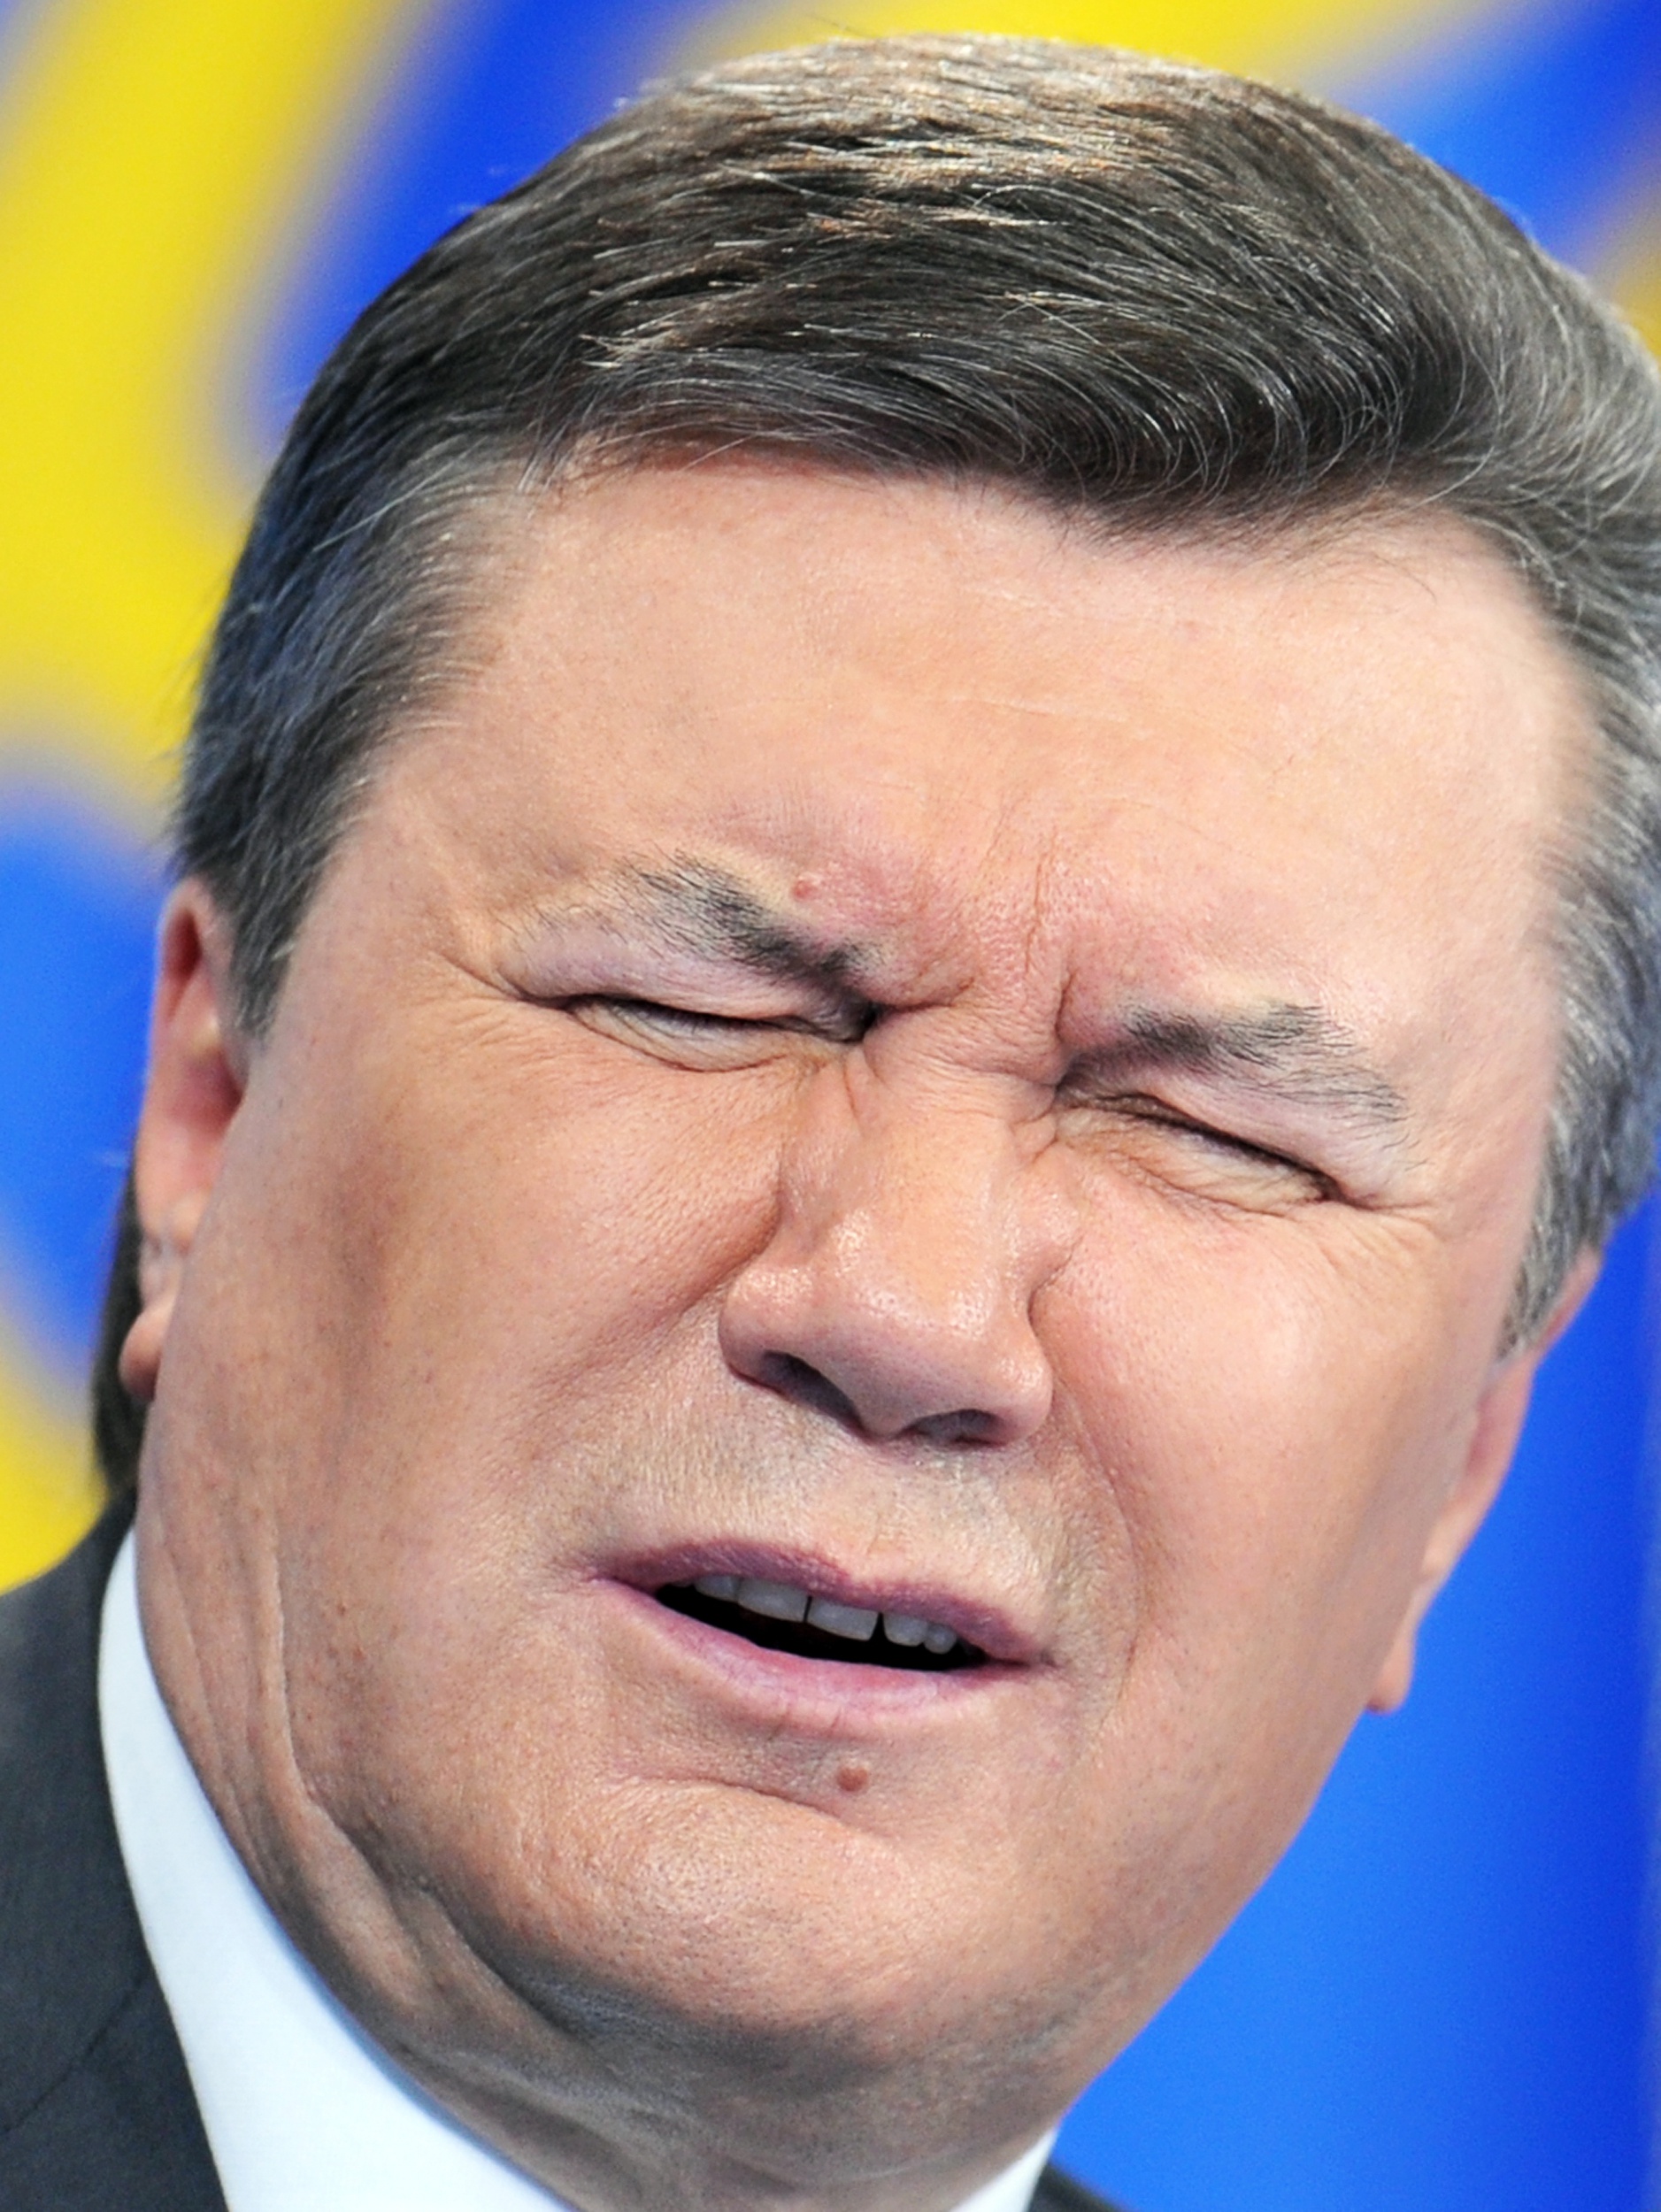 У Виктора Януковича вчера произошло кровоизлияние